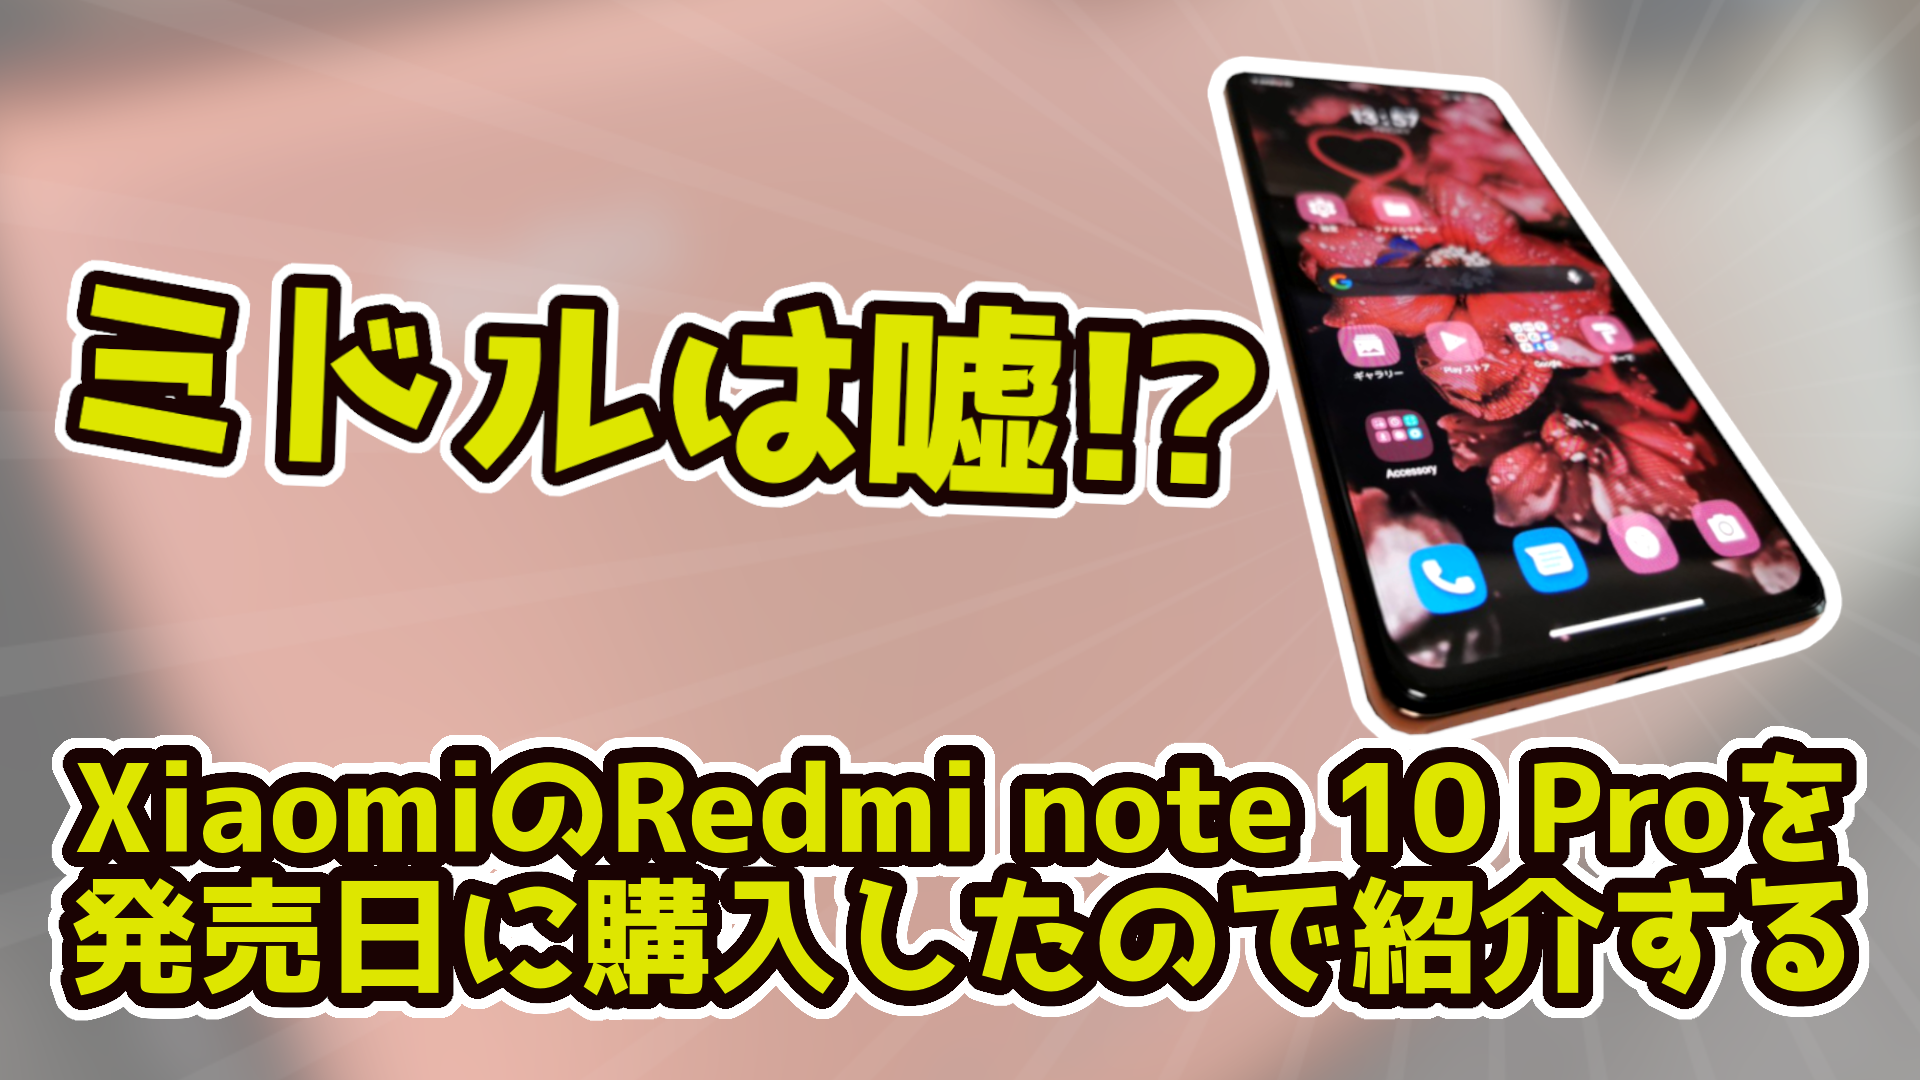 【ミドルは嘘】XiaomiのRedmi note 10 Proを発売日に購入したので紹介する | FascodeNetwork